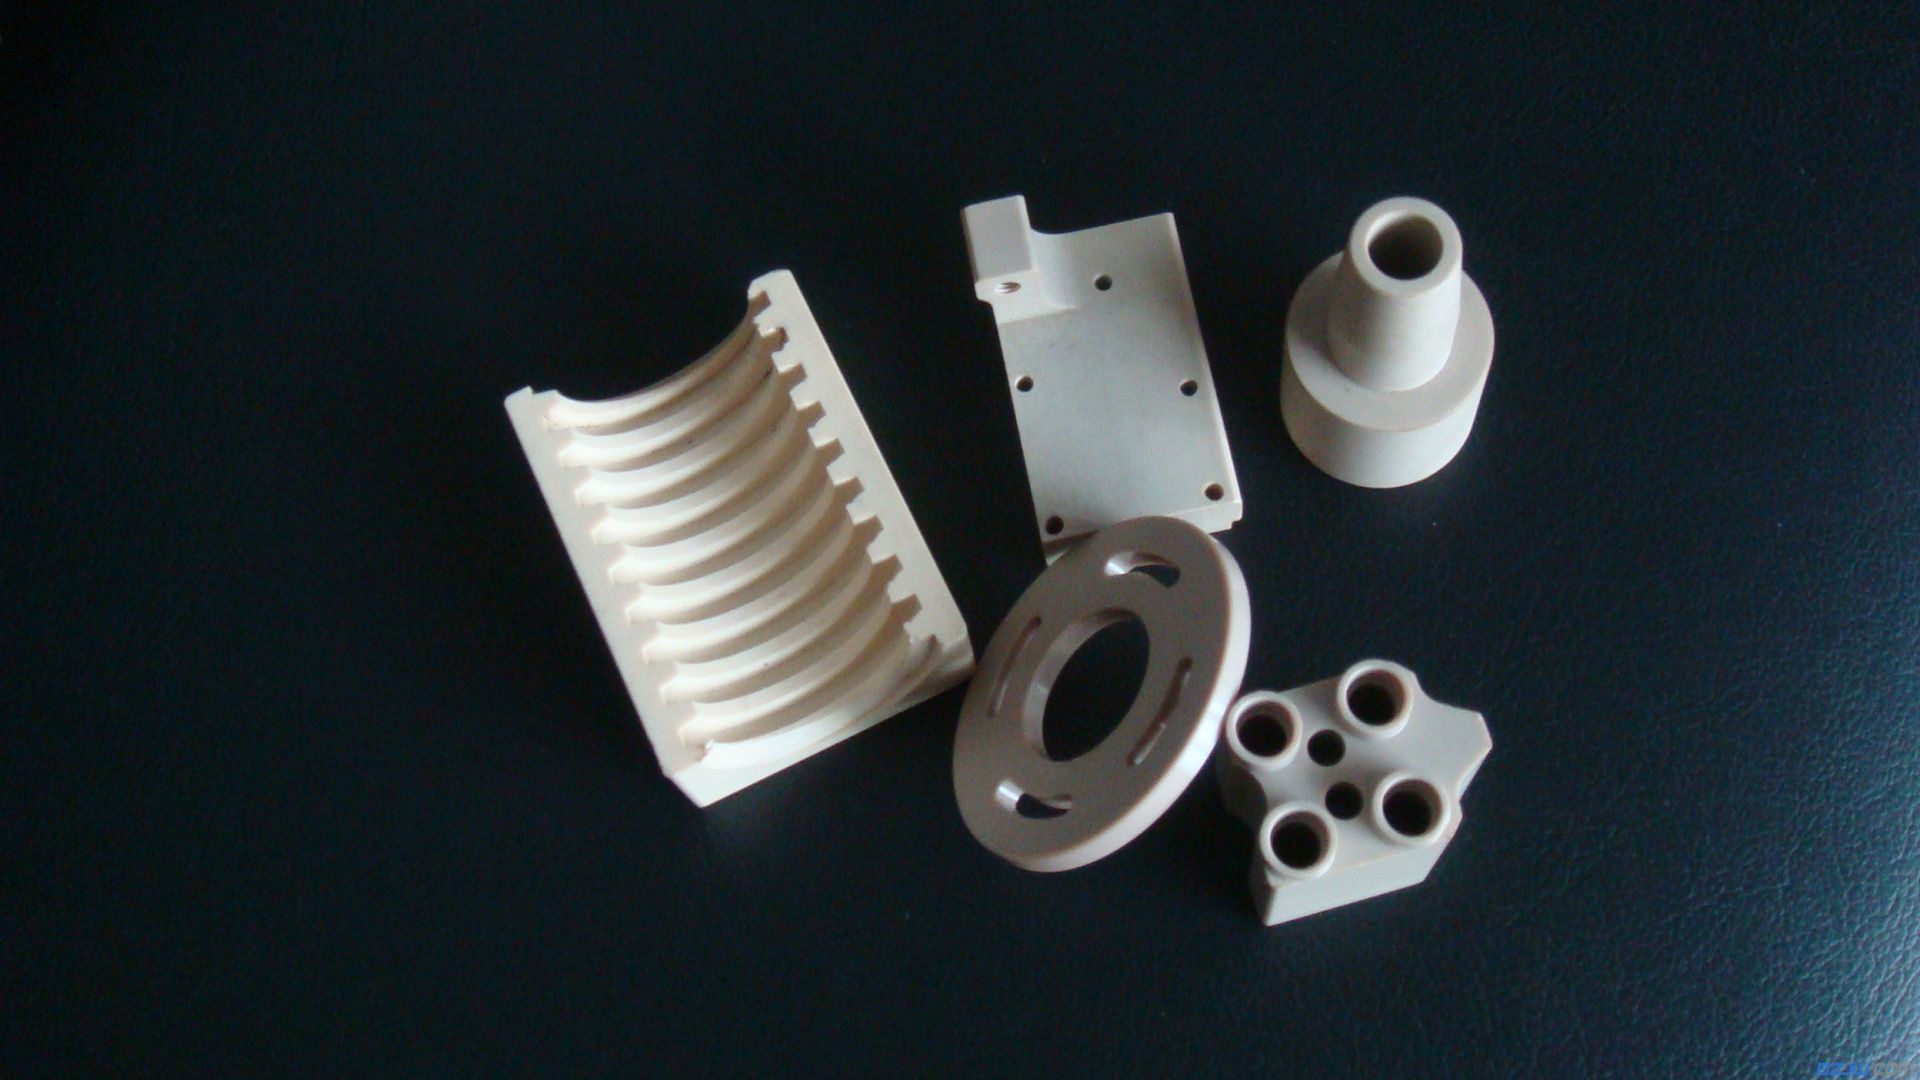 【工程塑料螺丝,螺母制品】_工程塑料螺丝,螺母制品价格_工程塑料螺丝